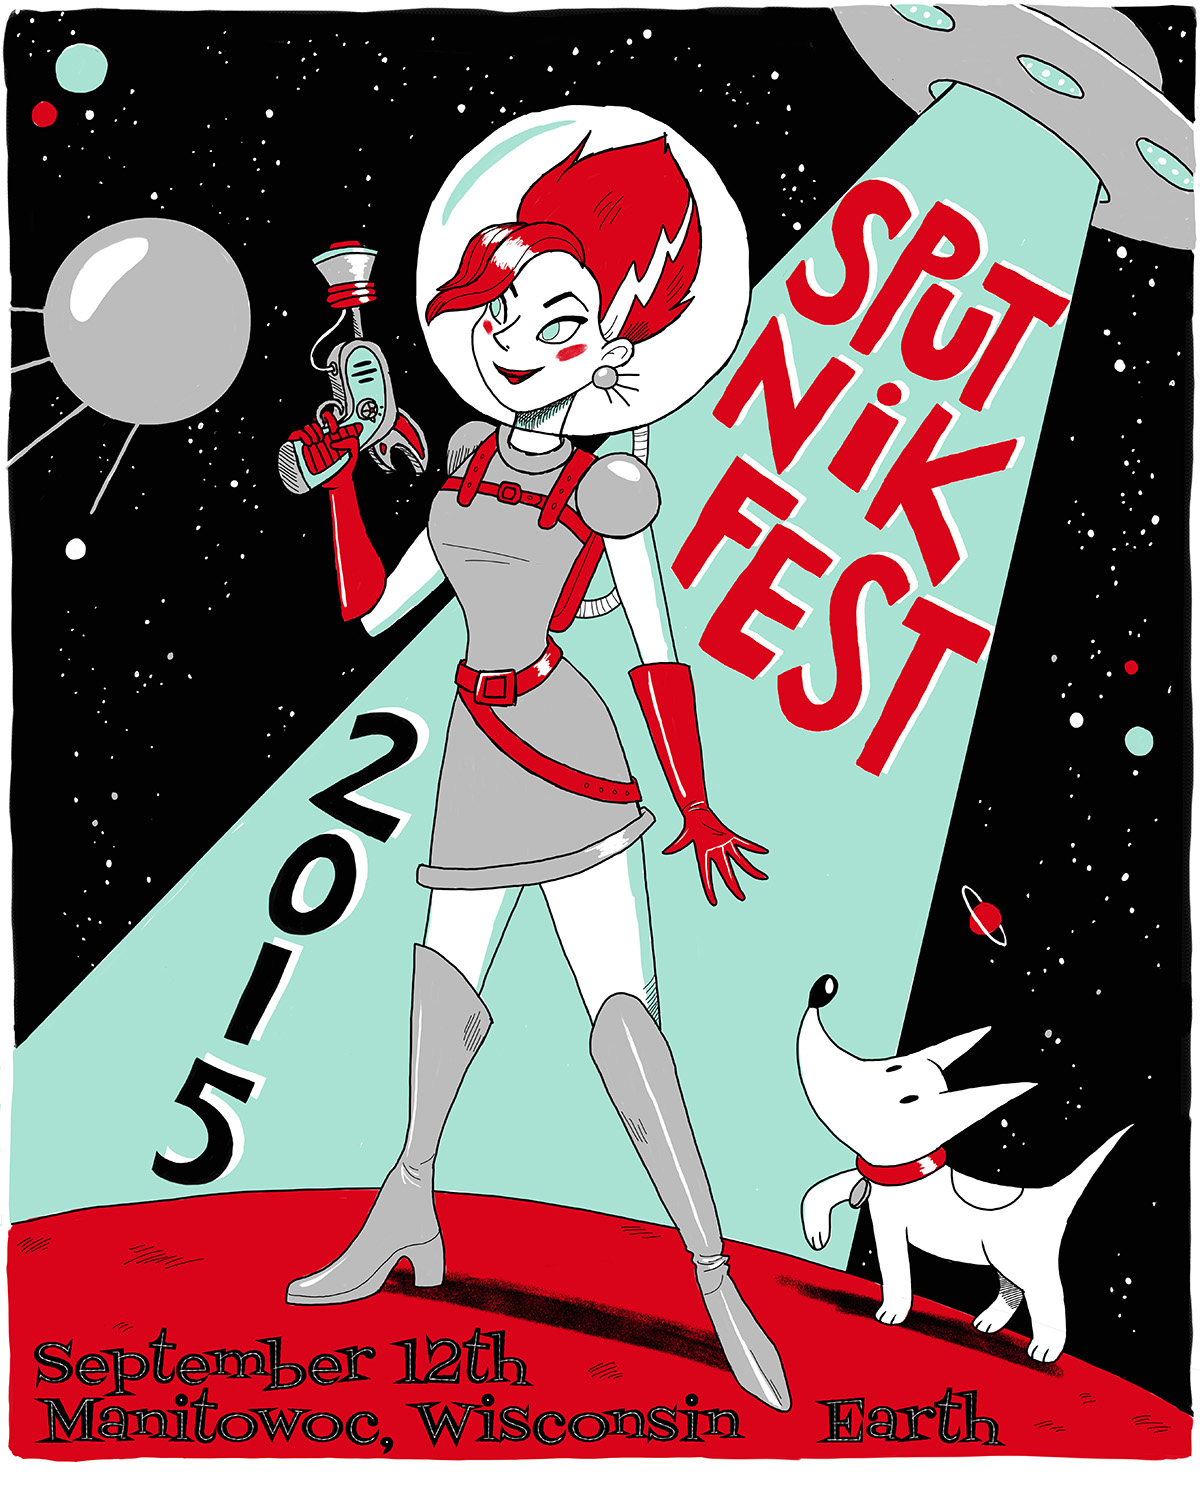 Sputnikfest 2015 Poster